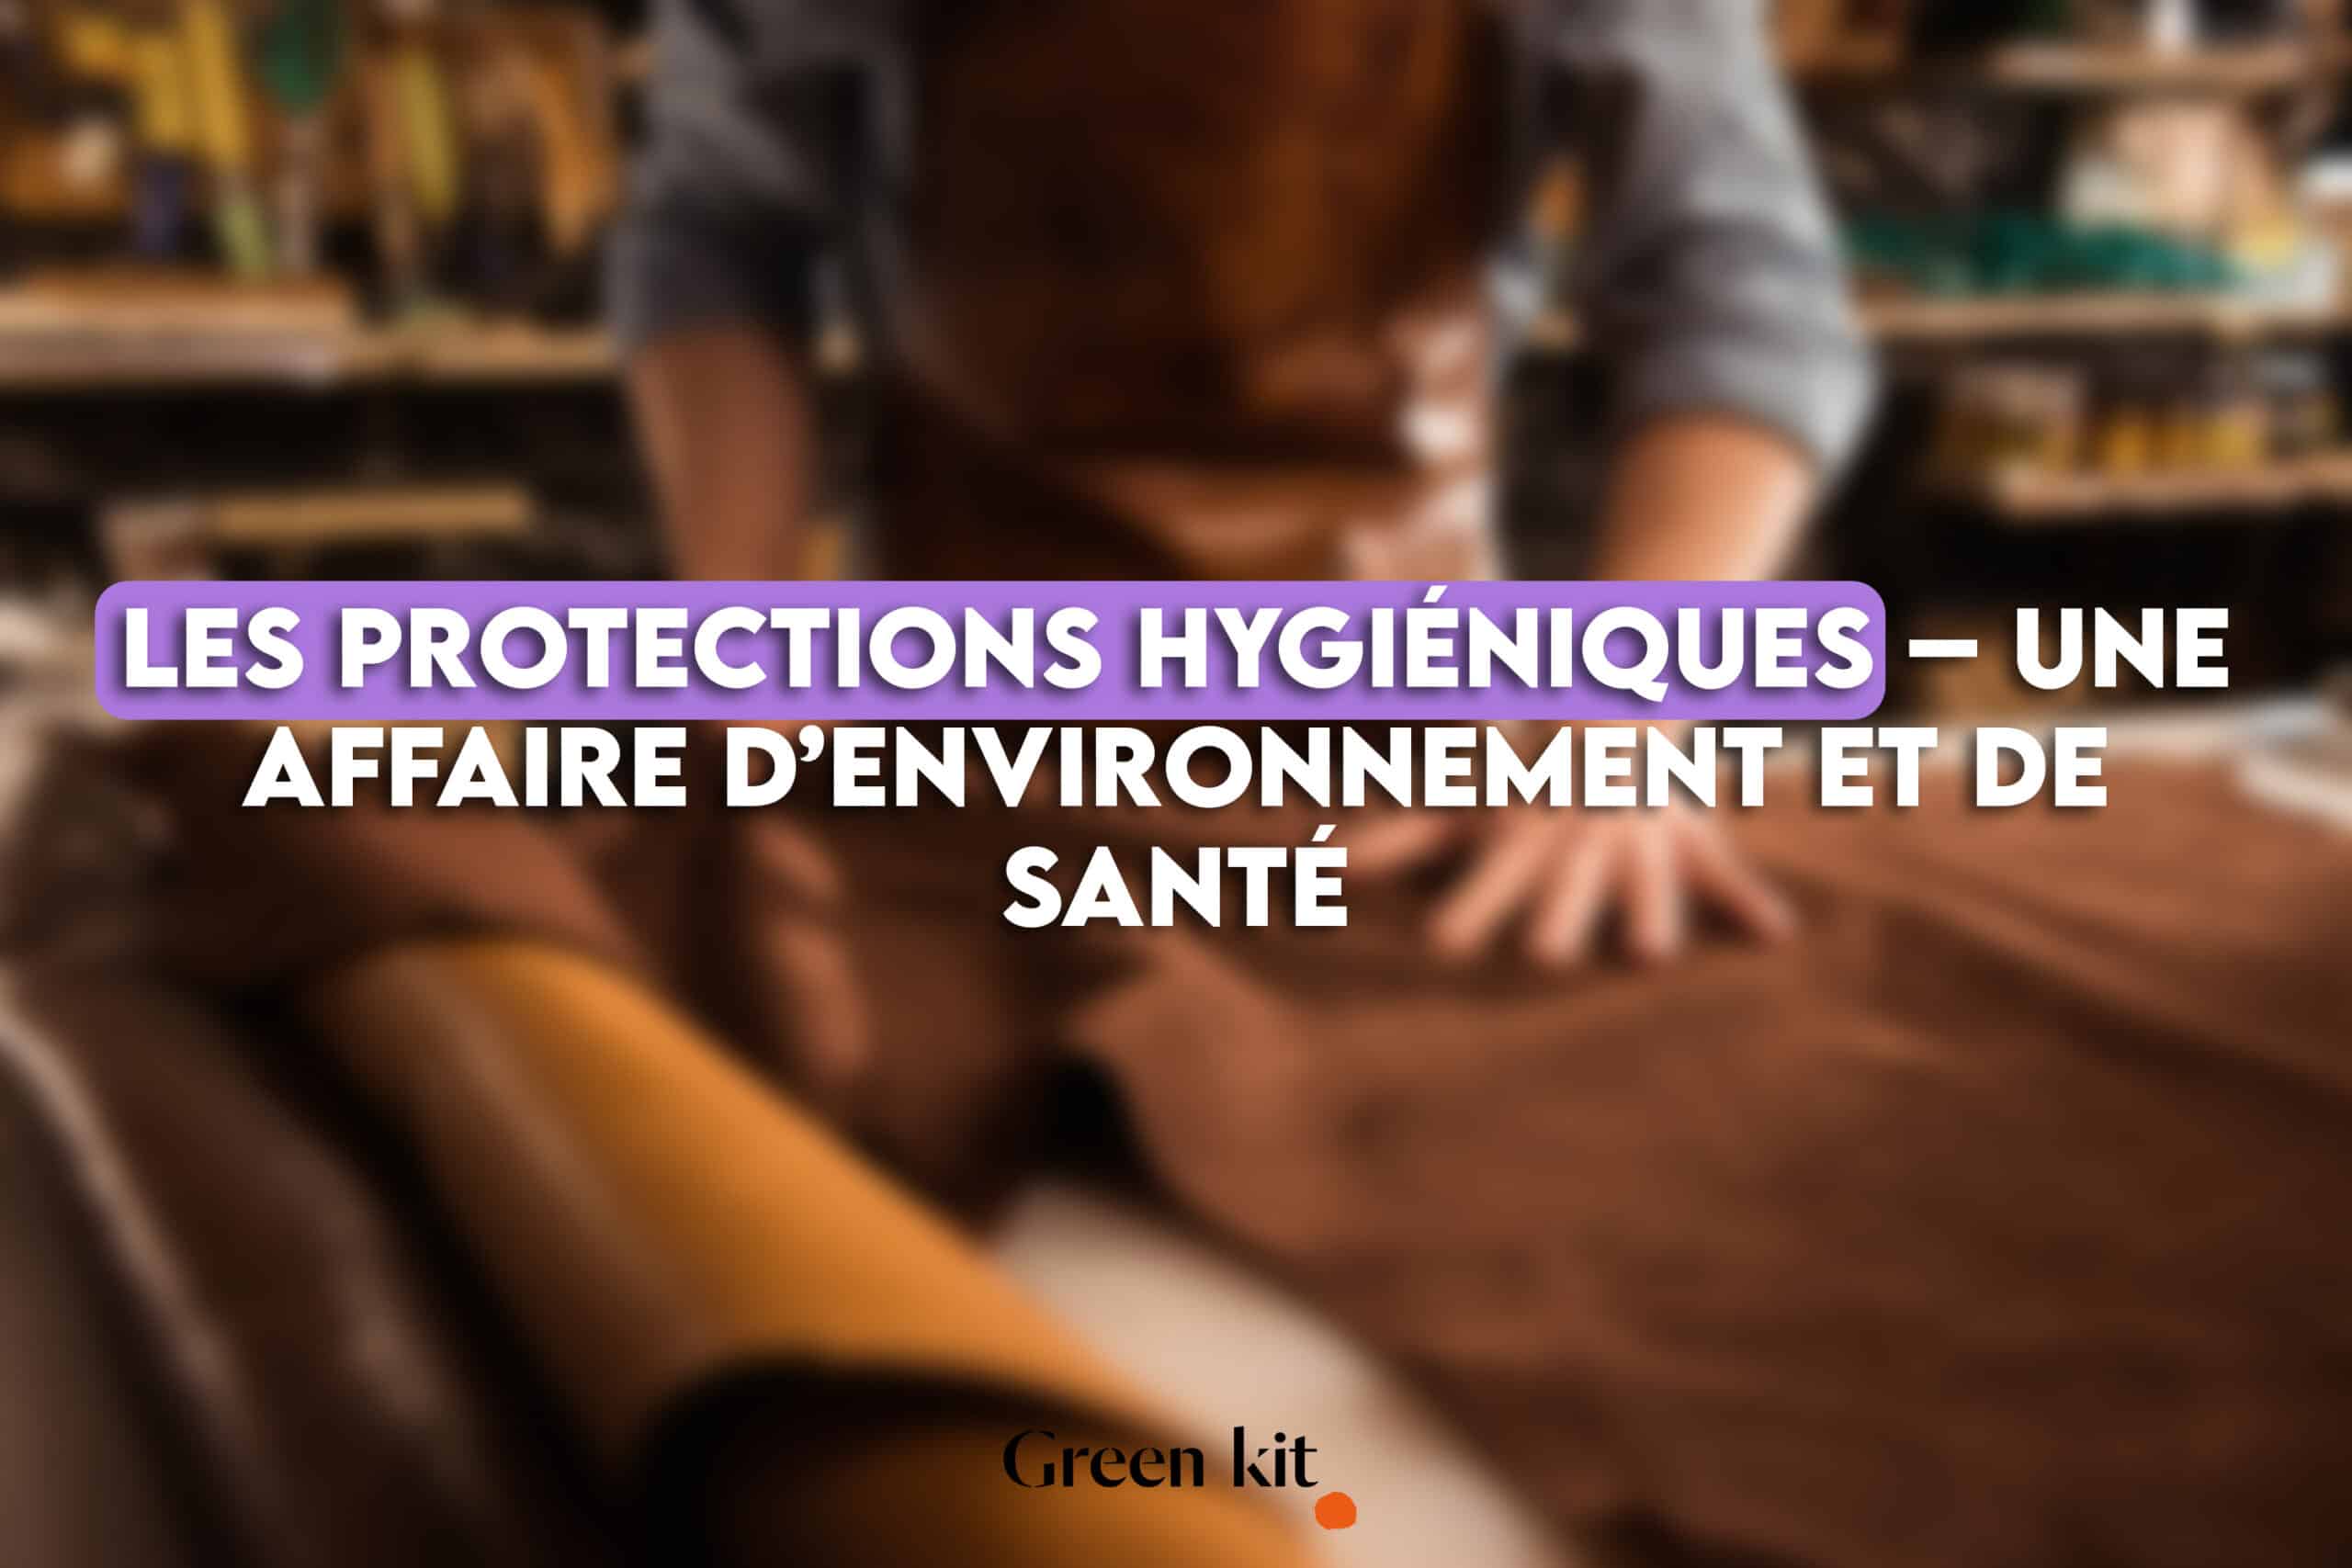 Image article - Les protections hygiéniques – Une affaire d’environnement et de santé